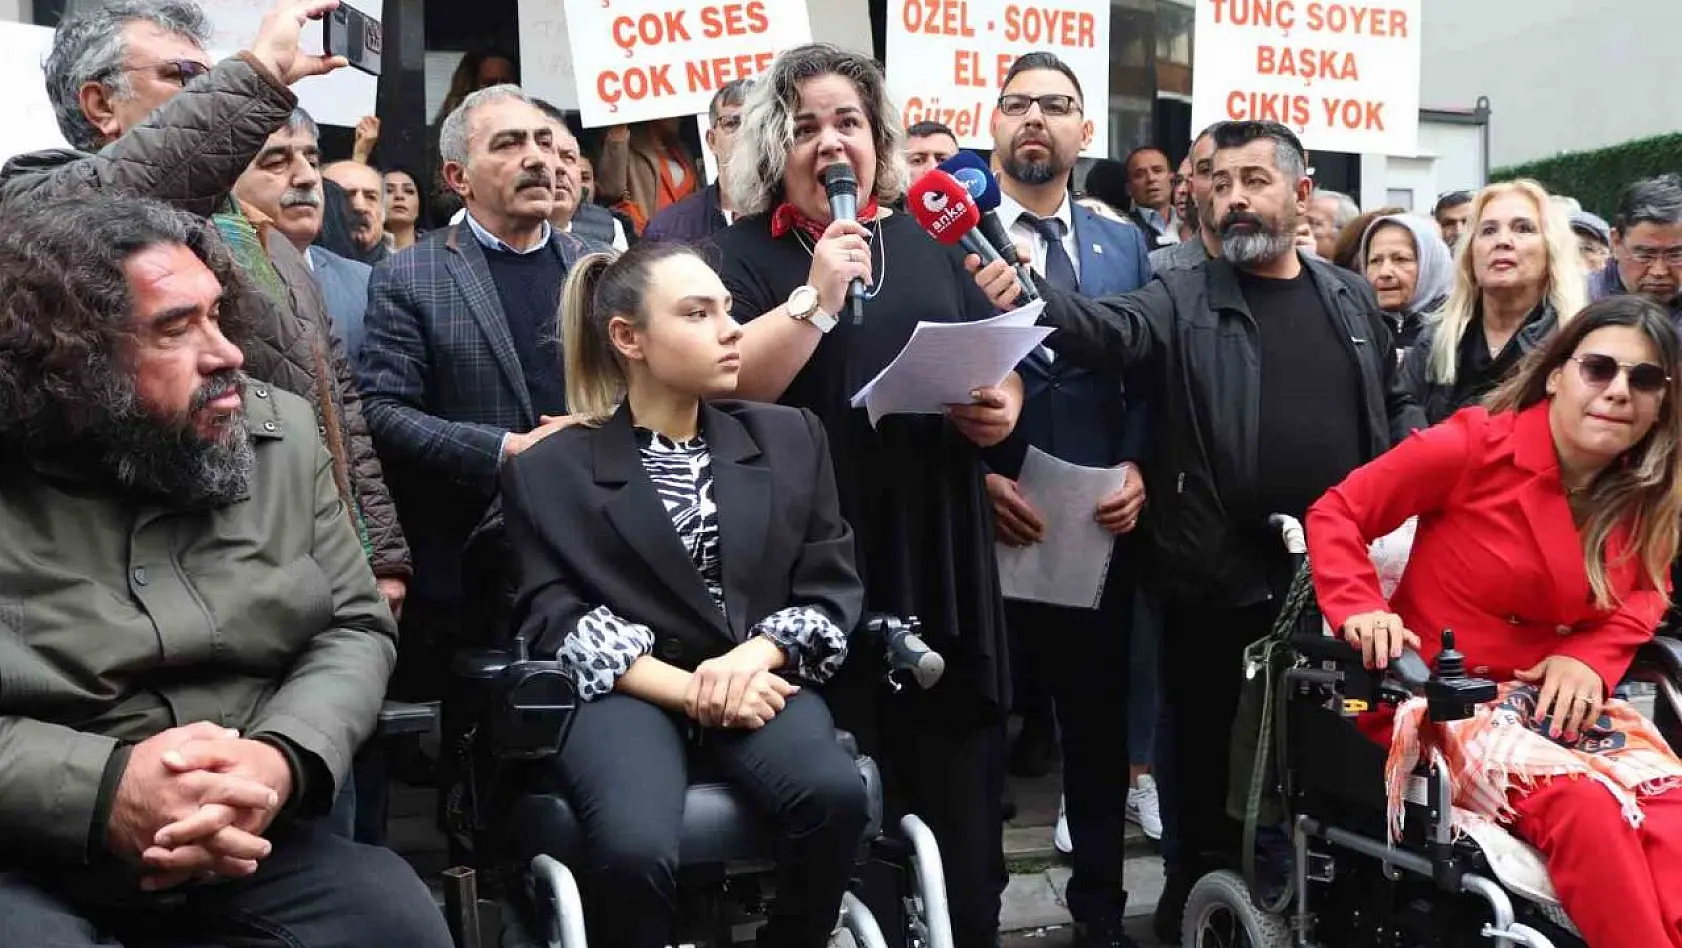 Tunç Soyer destekçilerinden CHP İzmir İl Başkanlığı önünde protesto